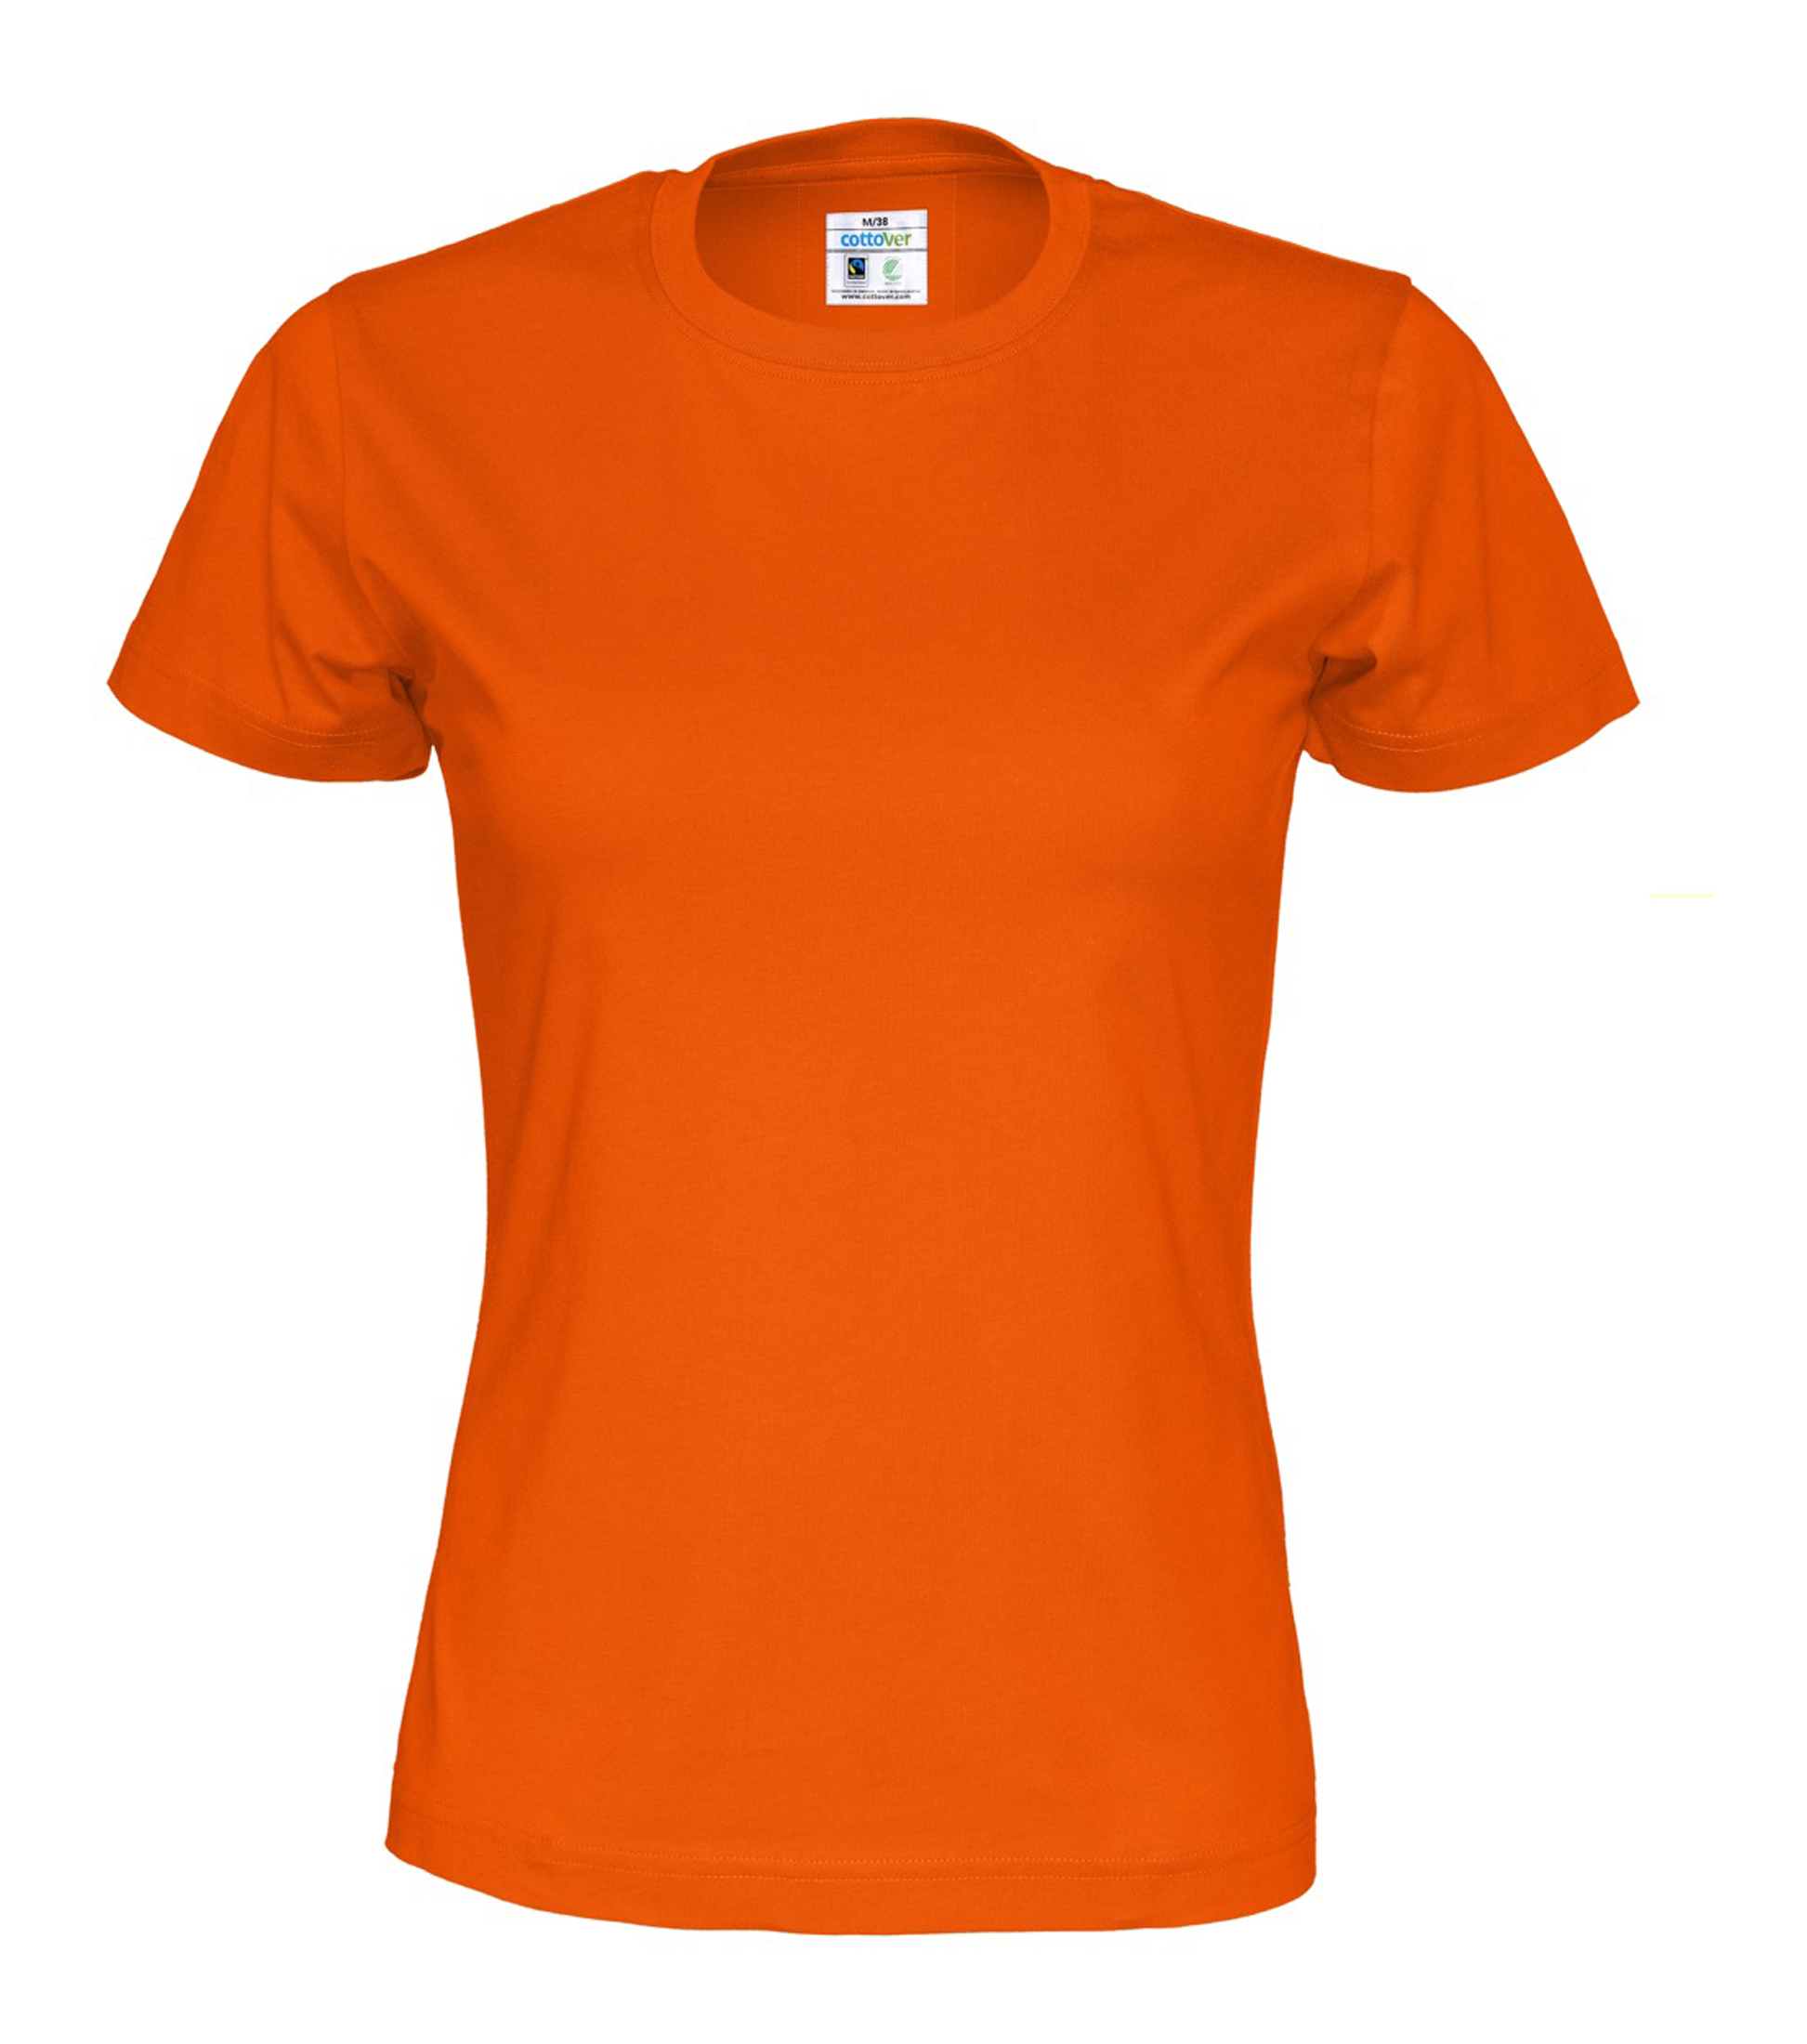 T-shirt Lady - Orange